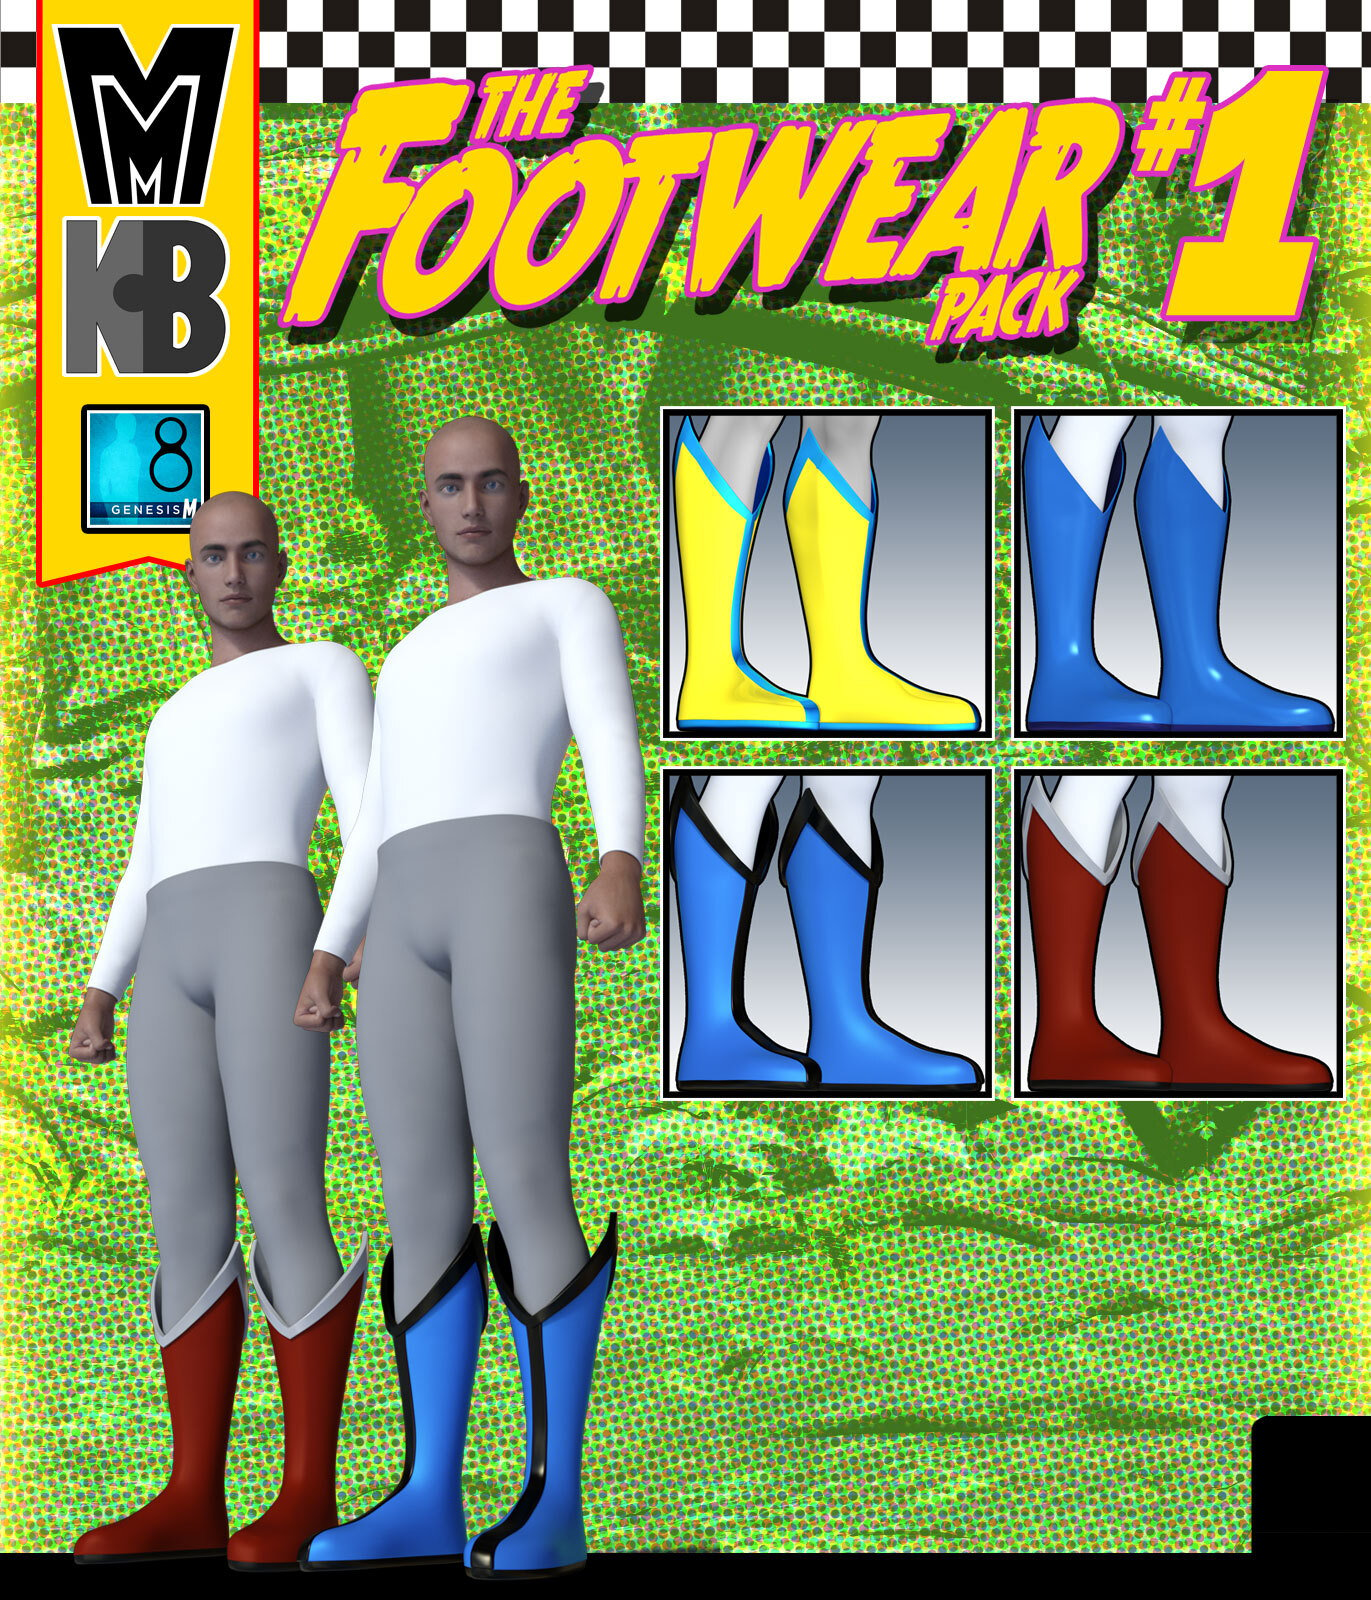 Footwear 001 MMKBG8M by: MightyMite, 3D Models by Daz 3D